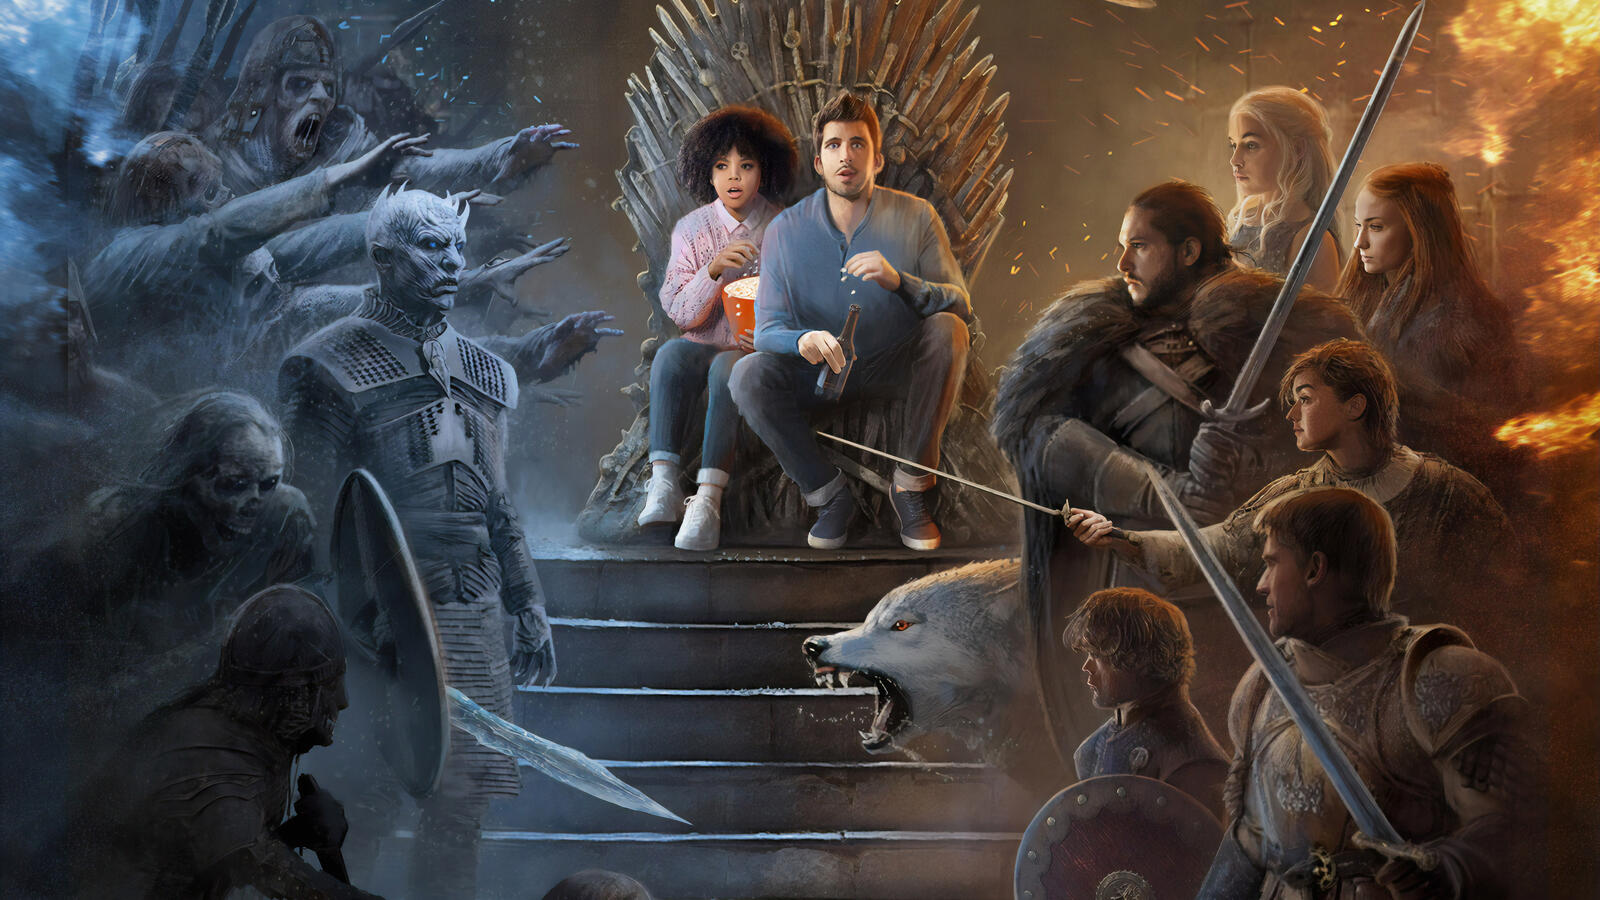 Бесплатное фото Прикол на тему Игры престолов, зрители с попкорном на железном троне